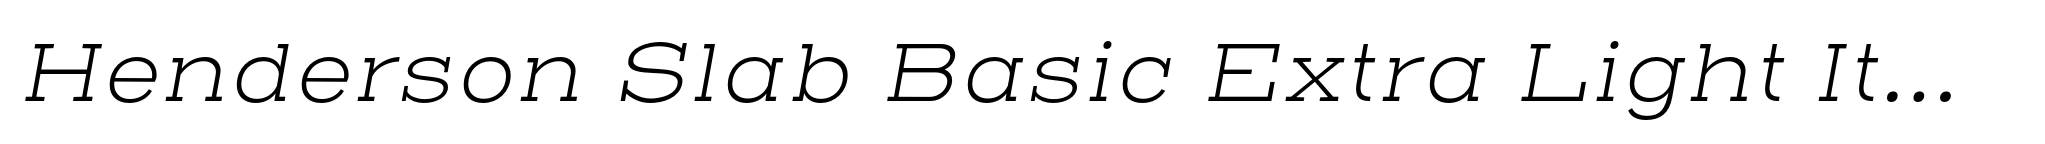 Henderson Slab Basic Extra Light Italic image